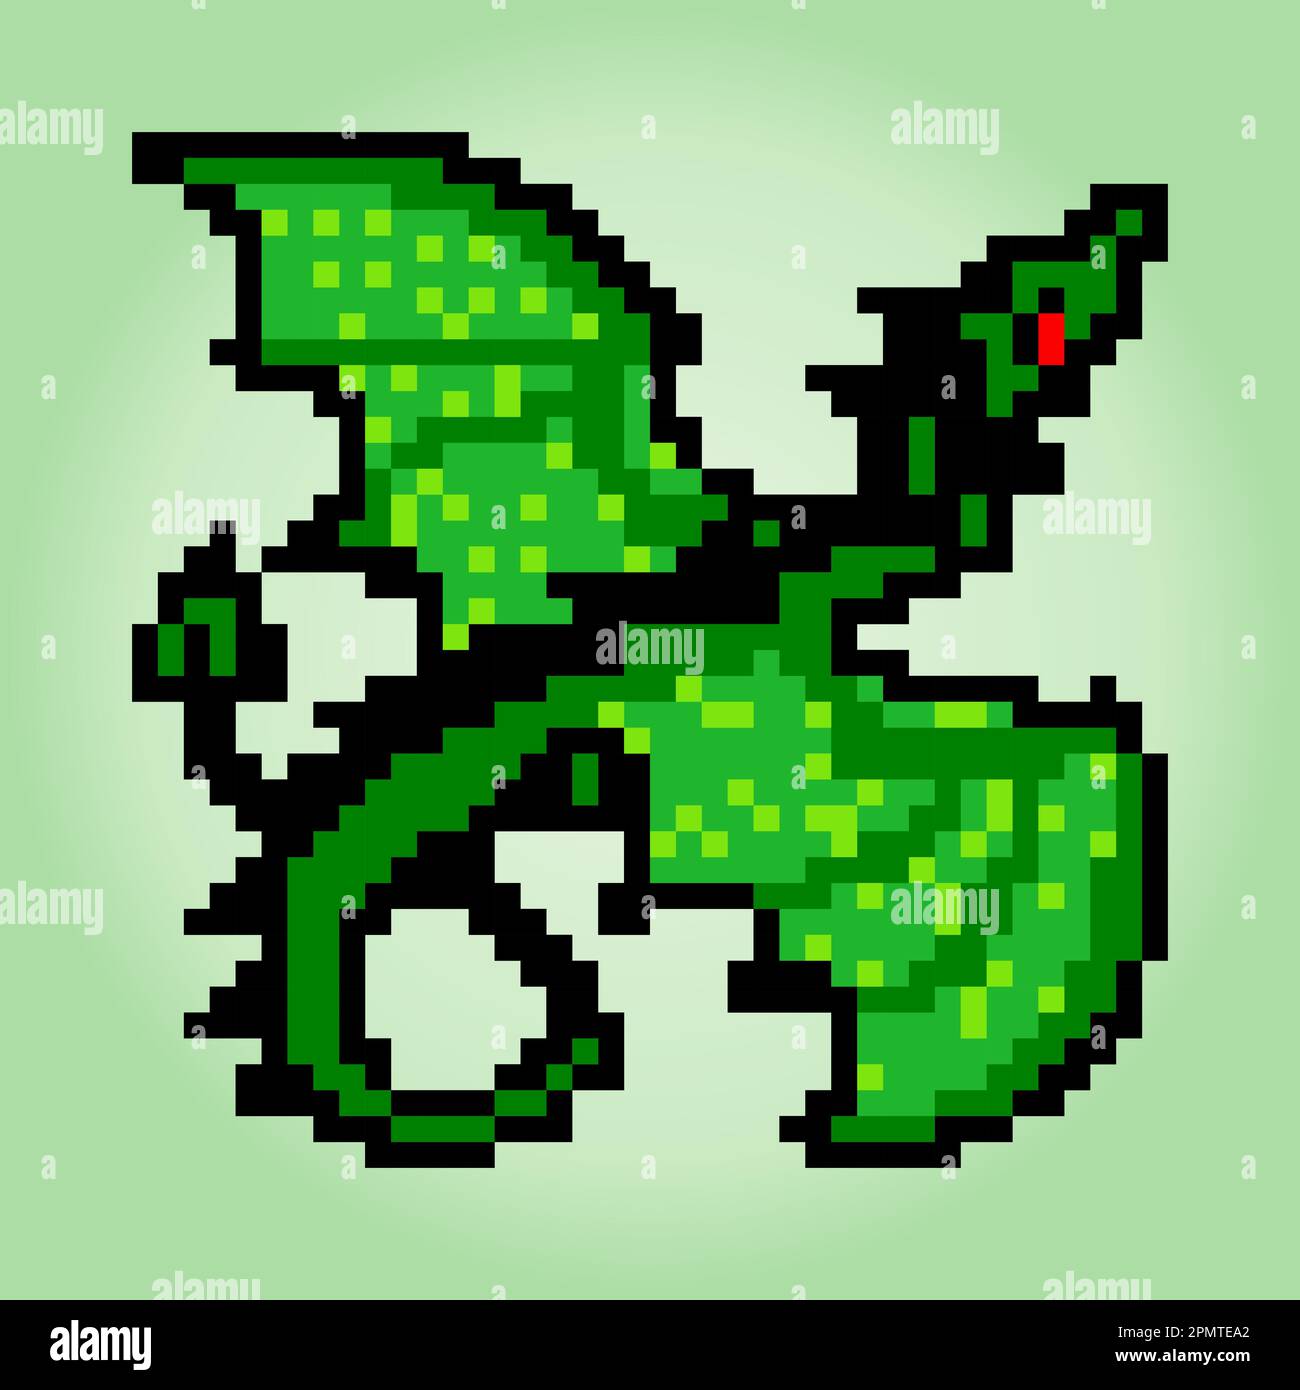 8-bit green dragon pixel image. Animals in vector illustrations. Stock Vector